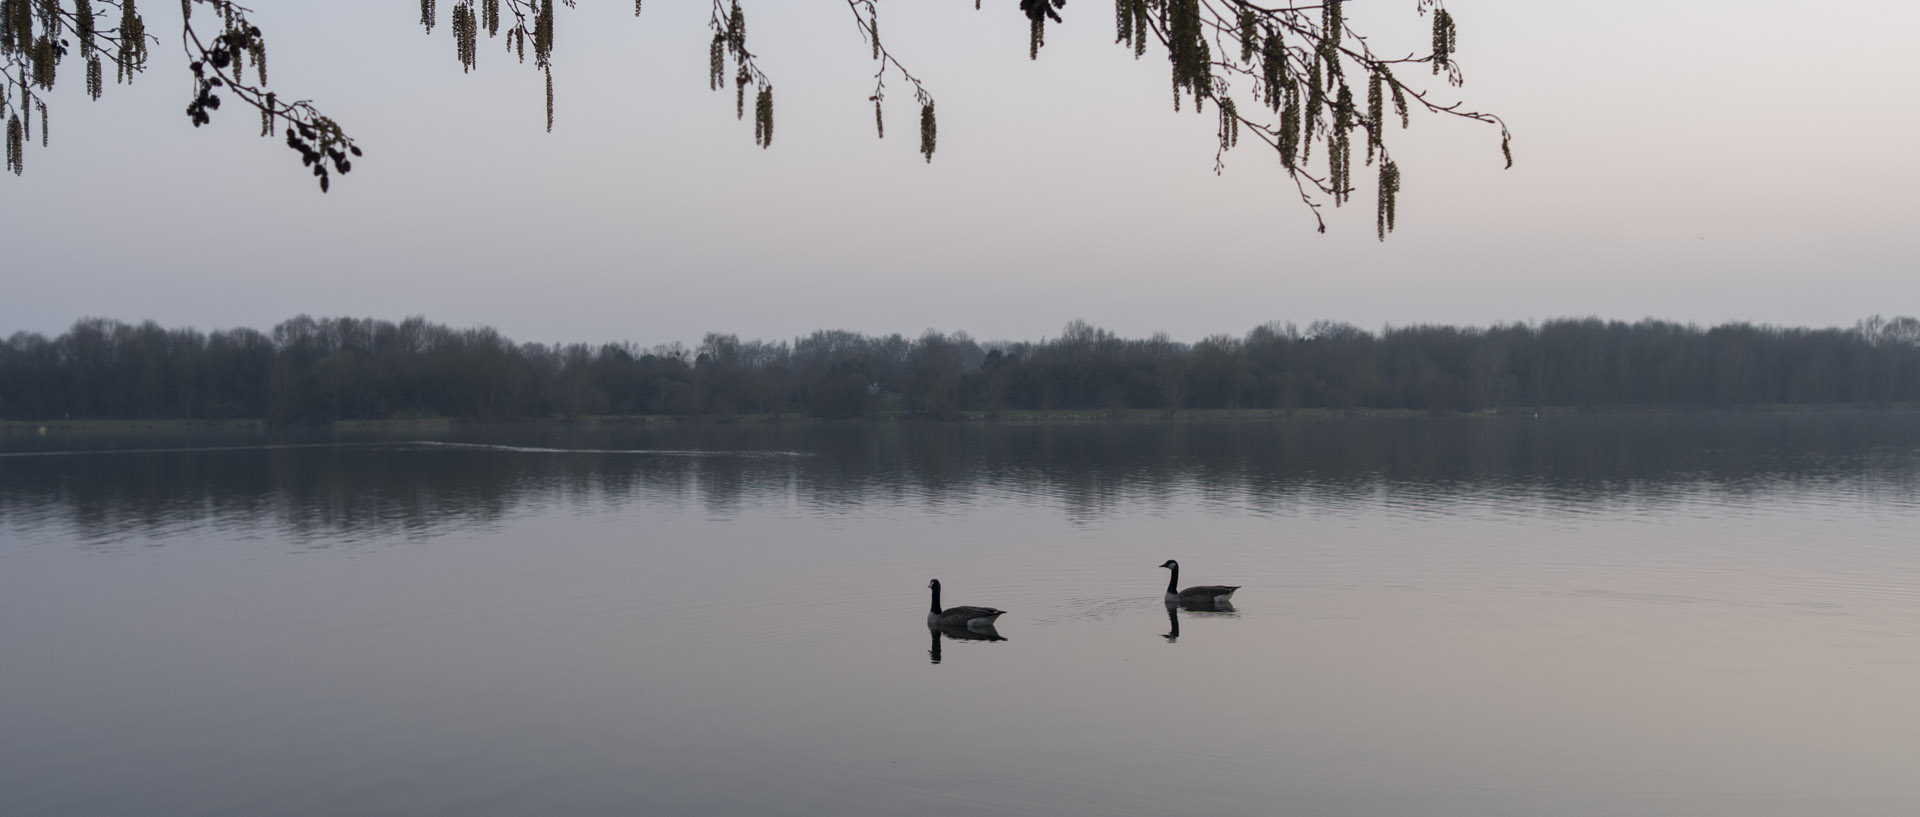 Lundi 16 mars 2015, 18:42, lac du Héron, Villeneuve d'Ascq